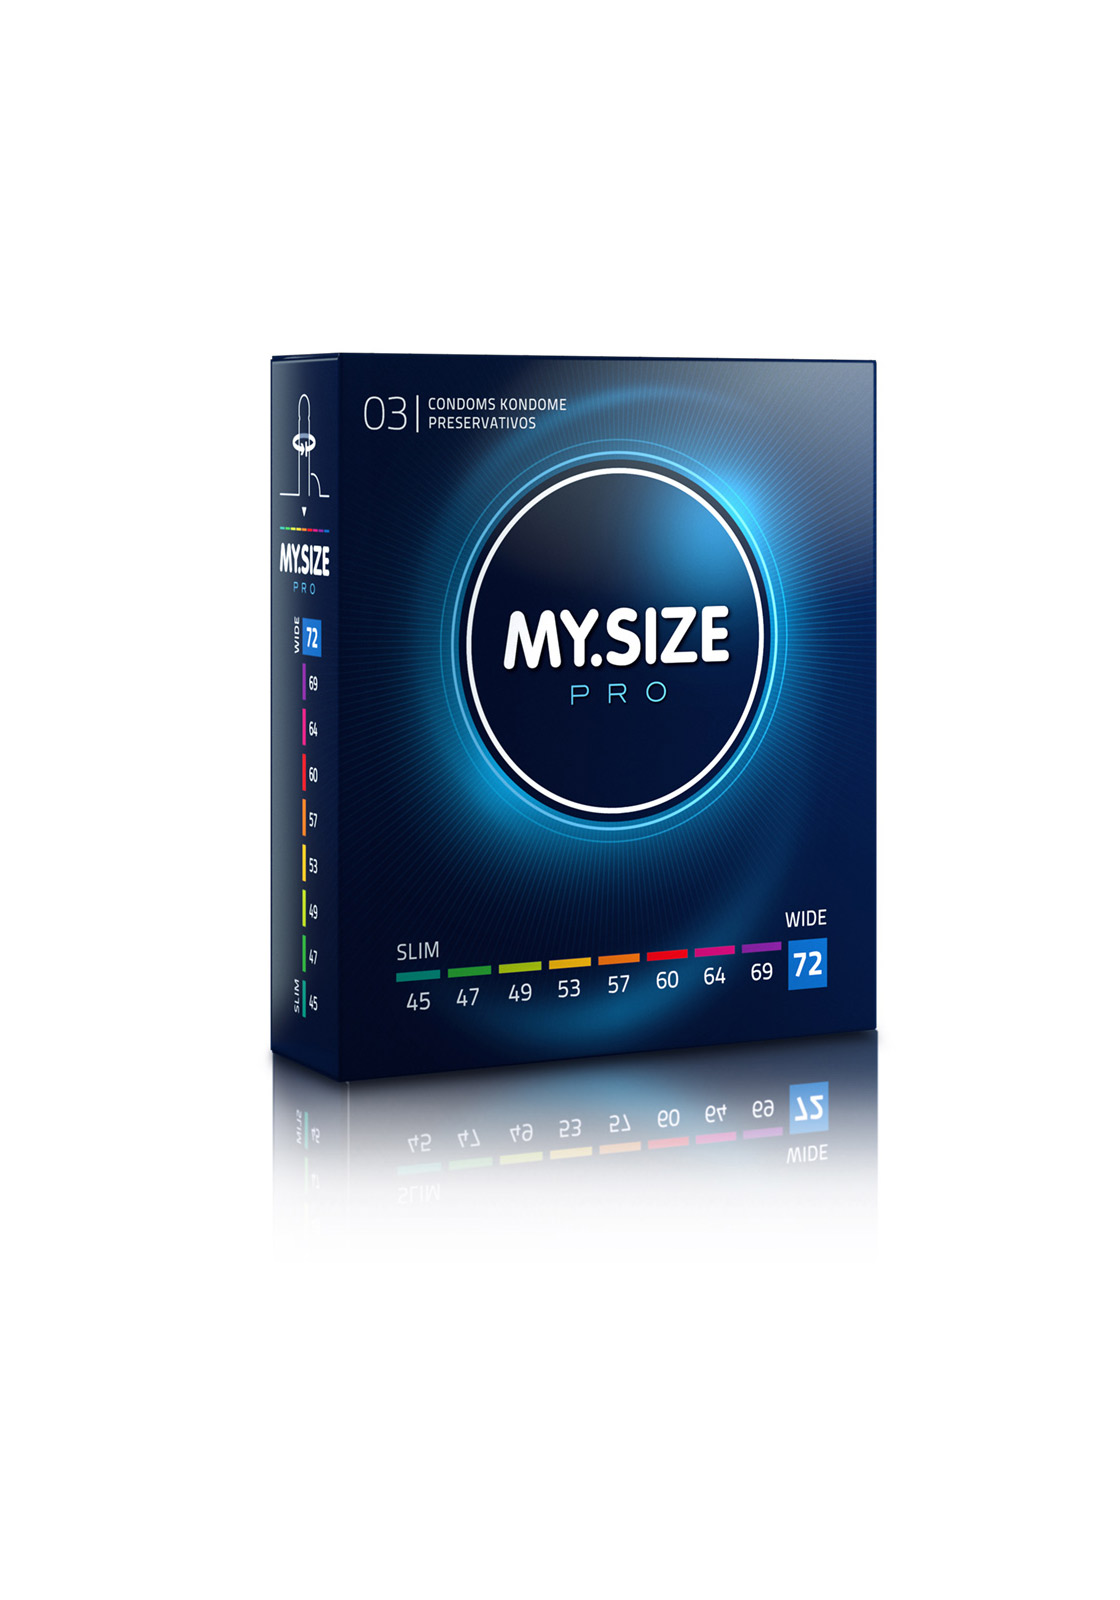 My.Size Pro: Kondome - Größe 72